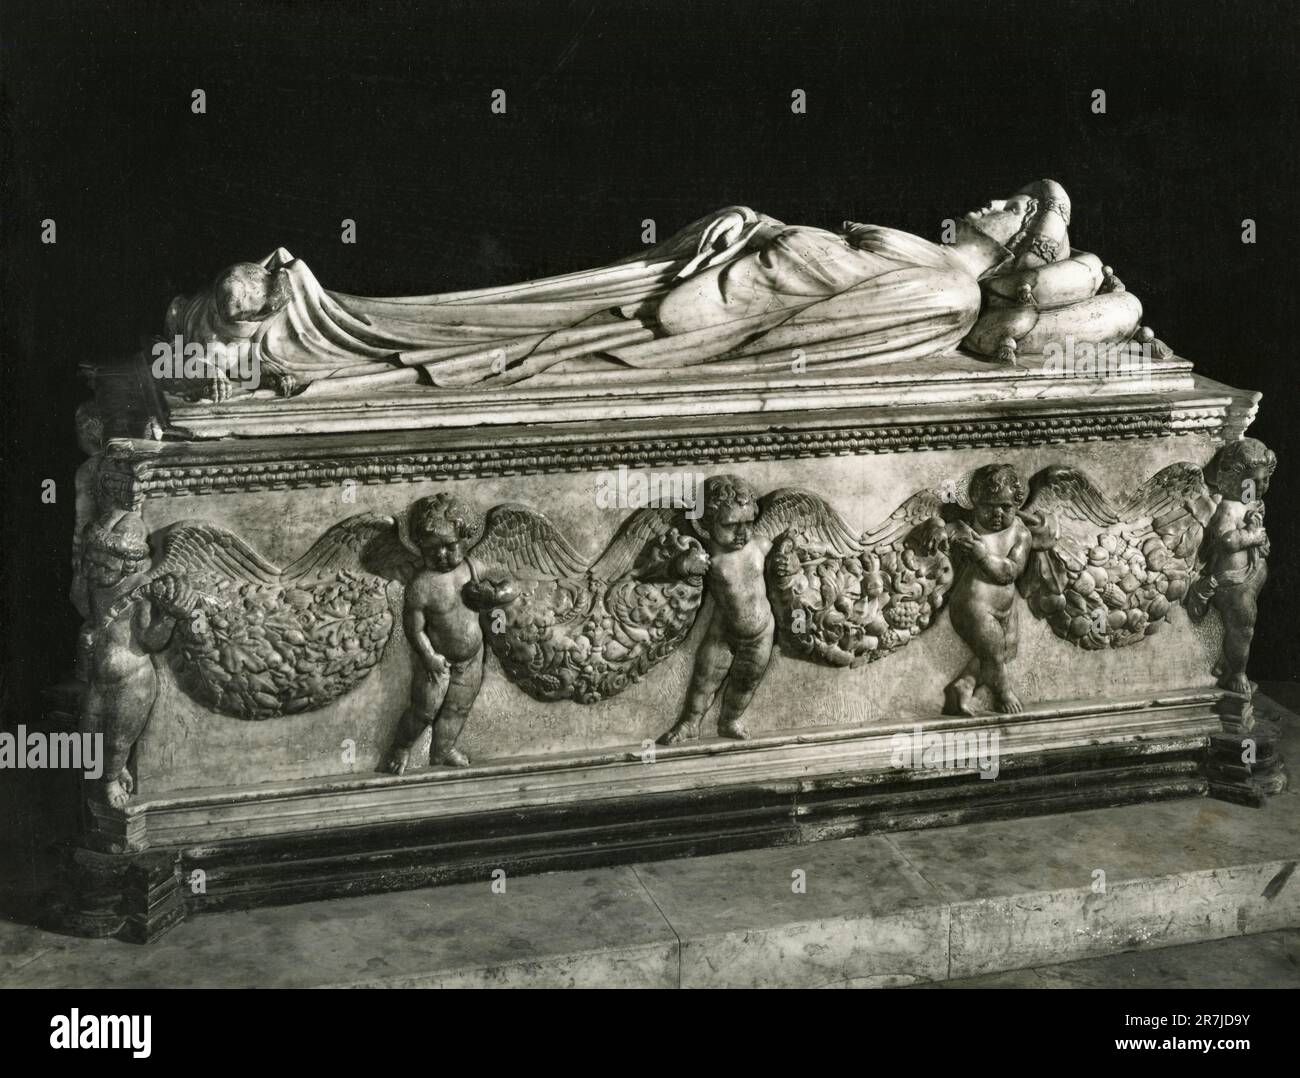 Tomba in marmo scolpito di Ilaria del Carretto, opere dell'artista italiano Iacopo della quercia, cattedrale di Lucca, Italia 1900s Foto Stock